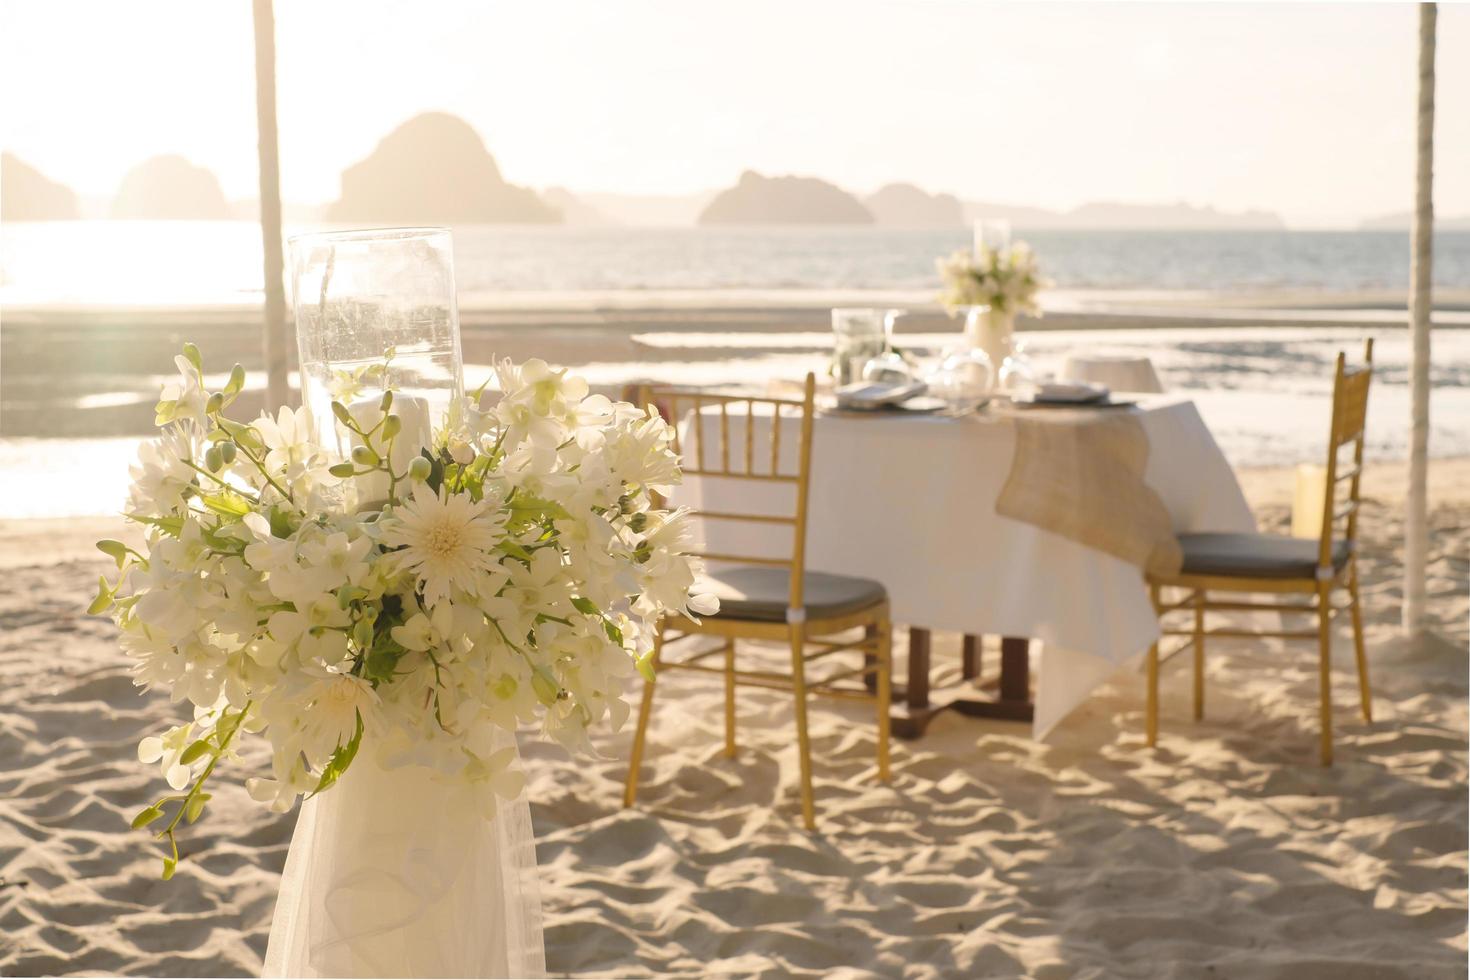 linda mesa montada para um jantar romântico na praia com flores e velas. catering para uma data romântica, casamento ou fundo de lua de mel. jantar na praia ao pôr do sol. foco selecionado. foto